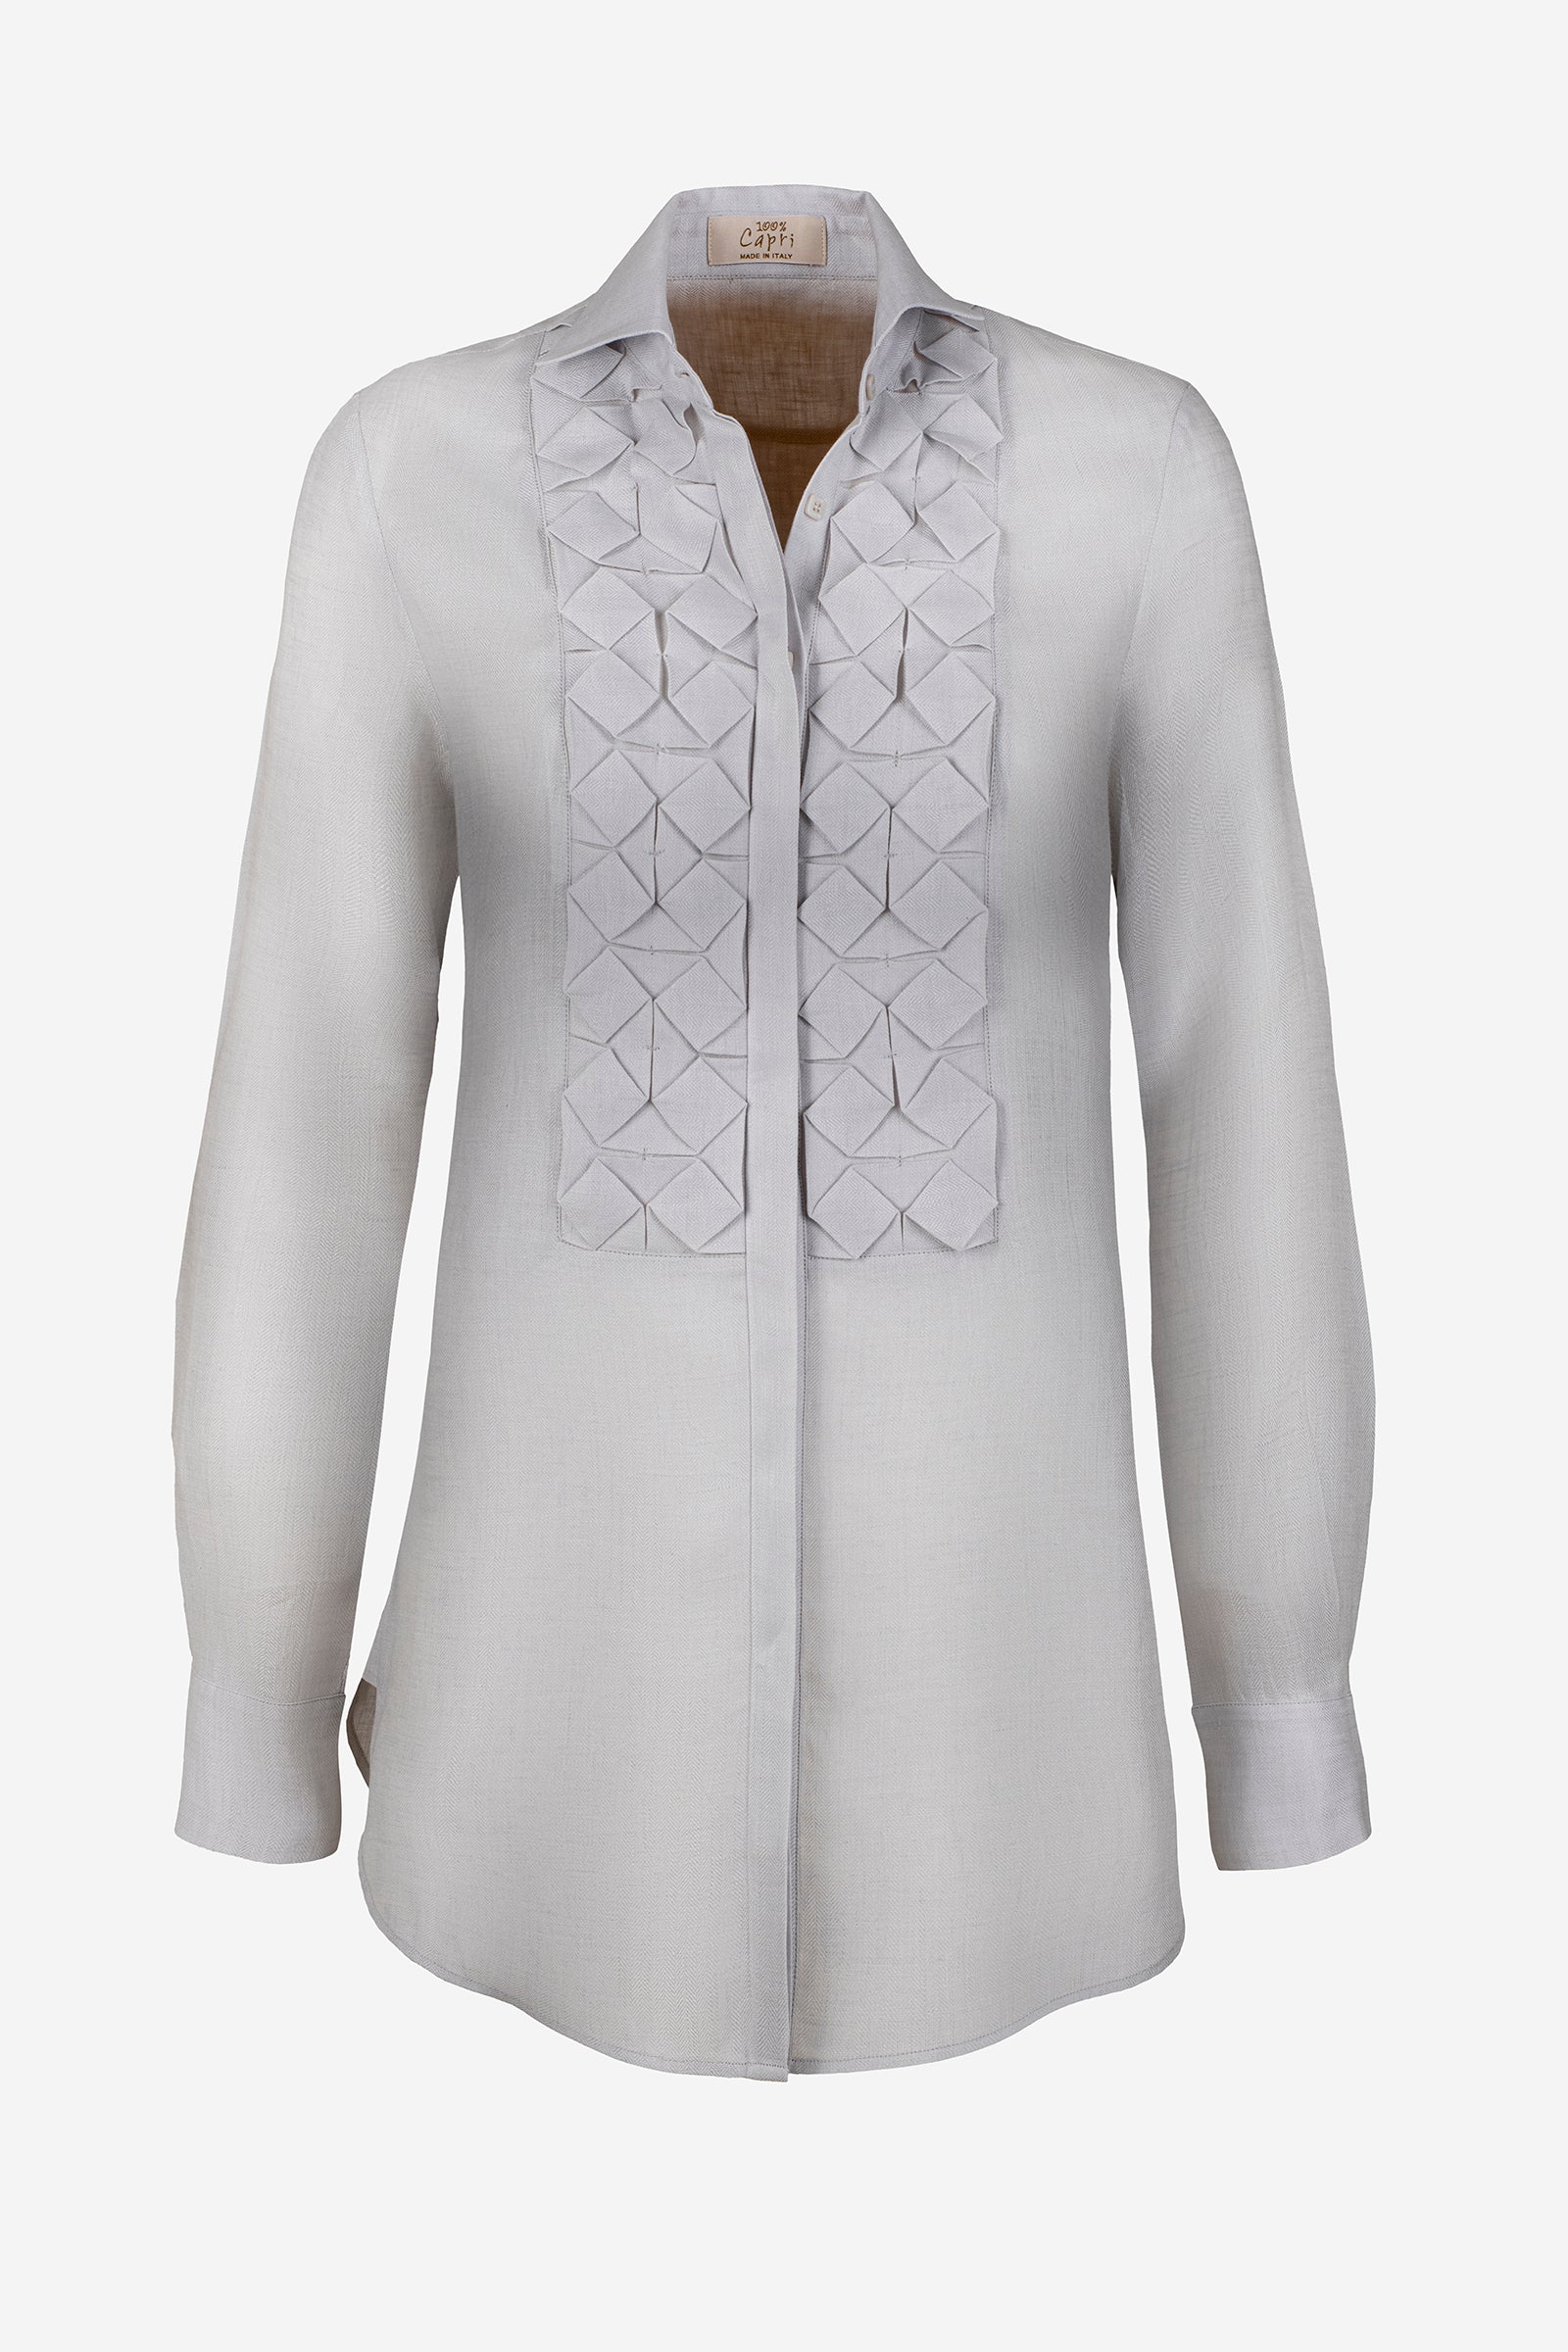 Camicia Nada 100% Capri light grey linen shirt front